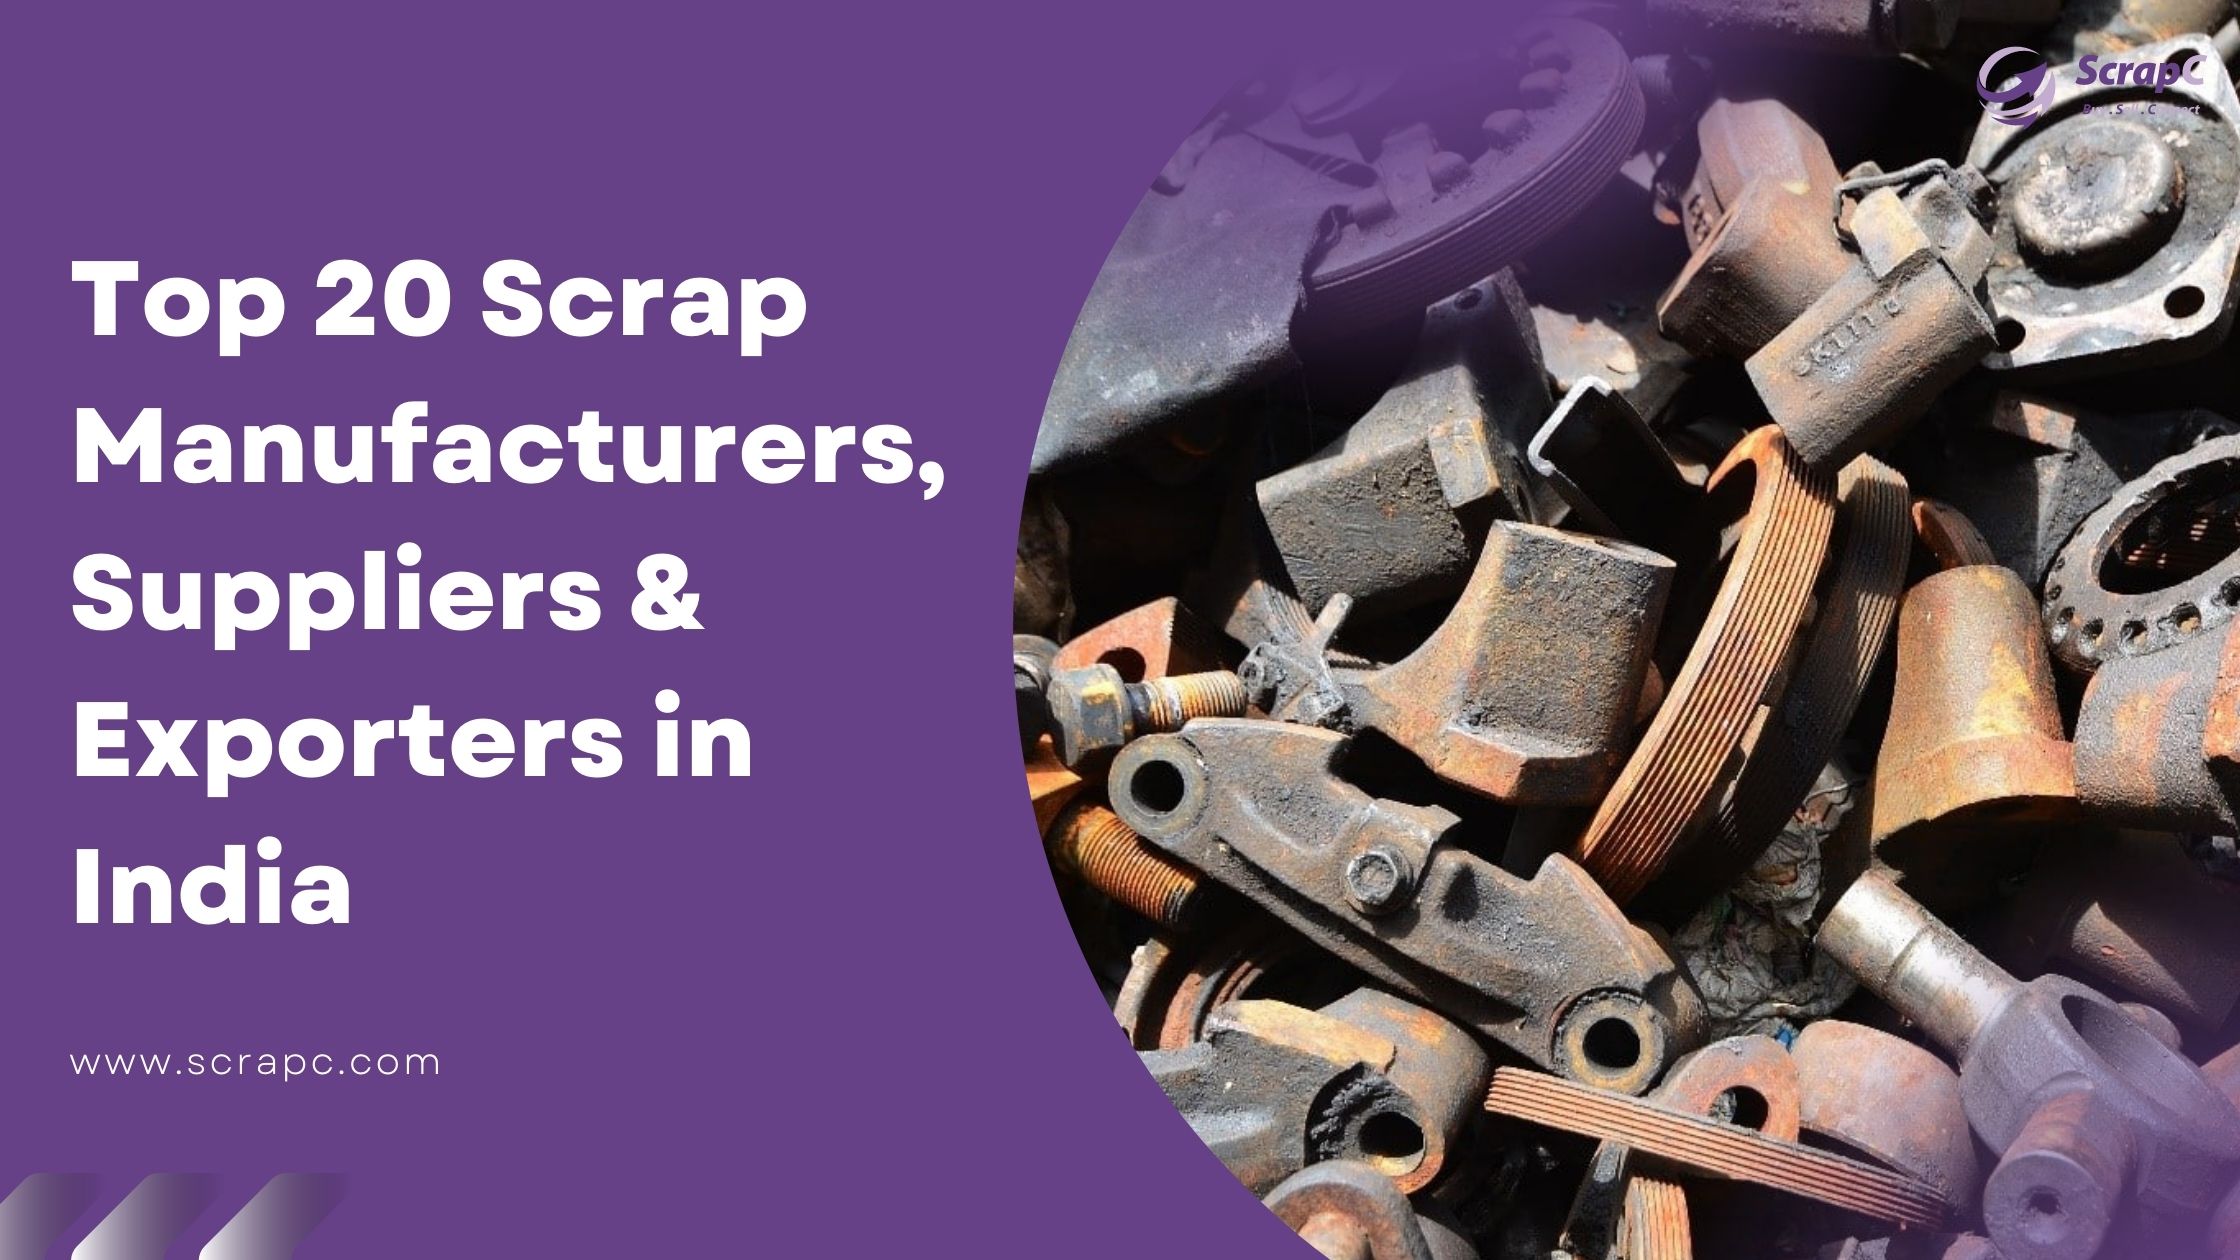 Top 20 Scrap Manufacturers, Suppliers & Exporters in India